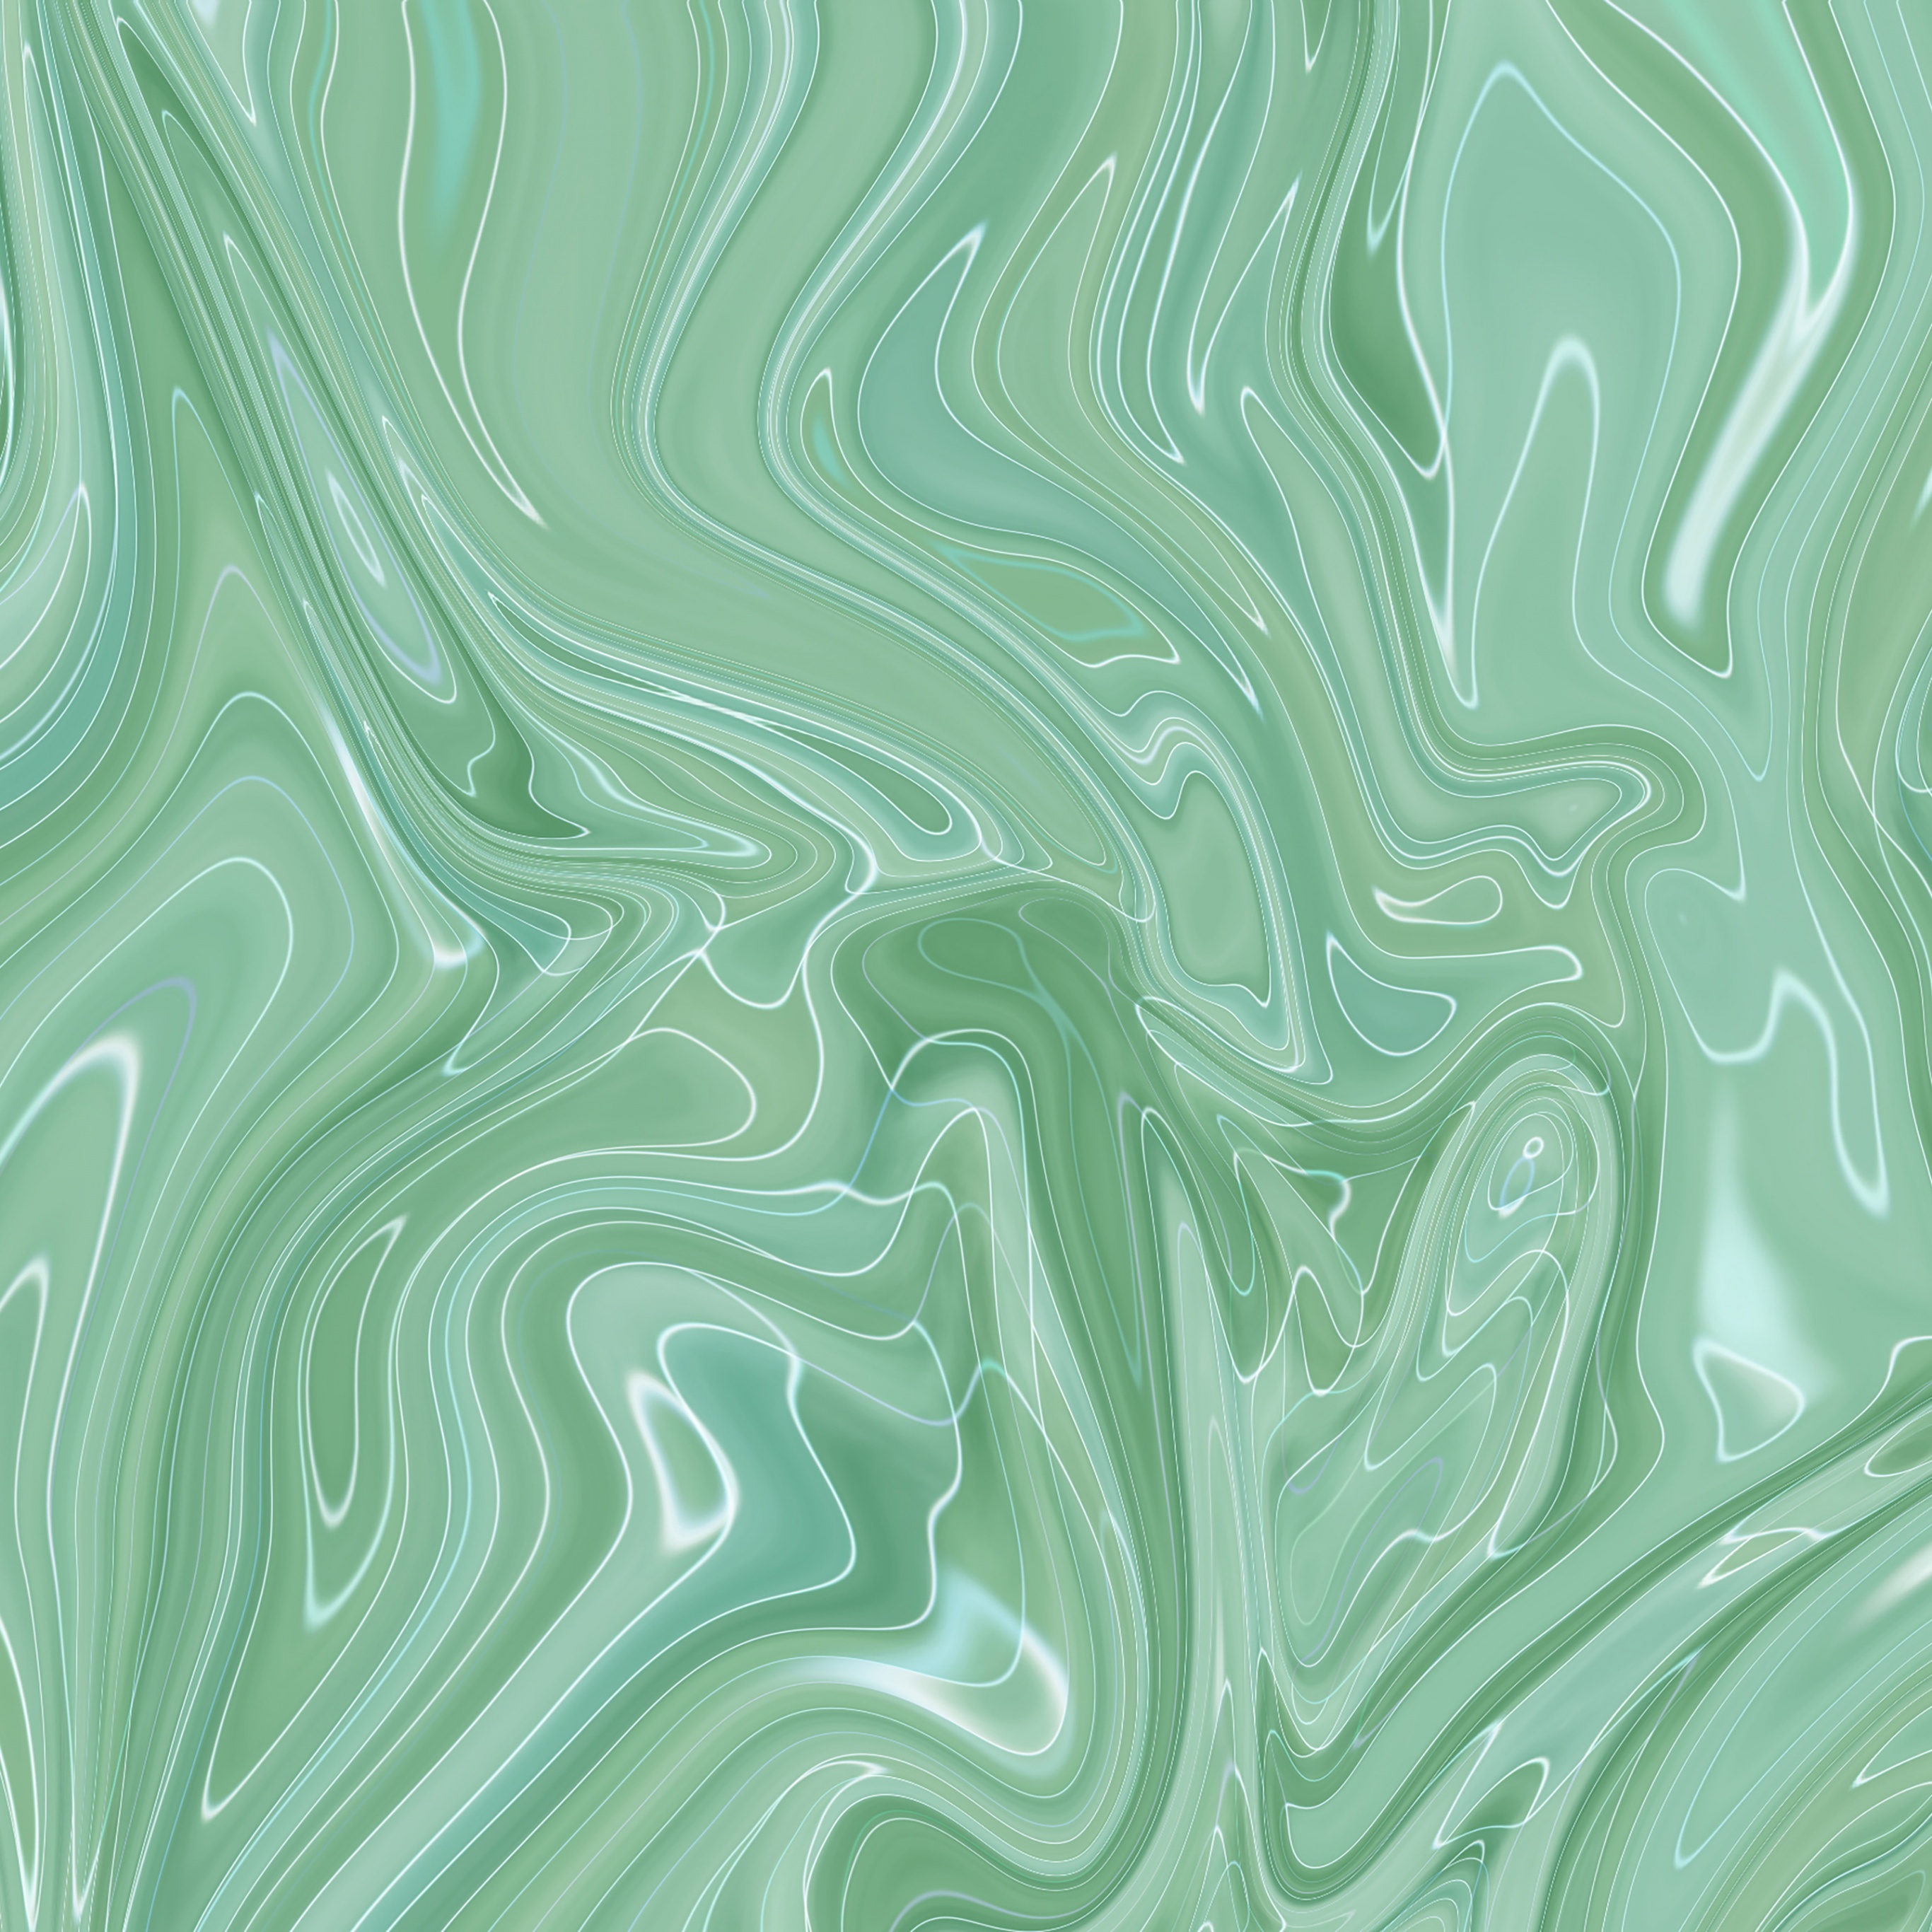 Top 23 Best Aesthetic Green Wallpapers For Desktop PC Laptop Computer   4k HD 